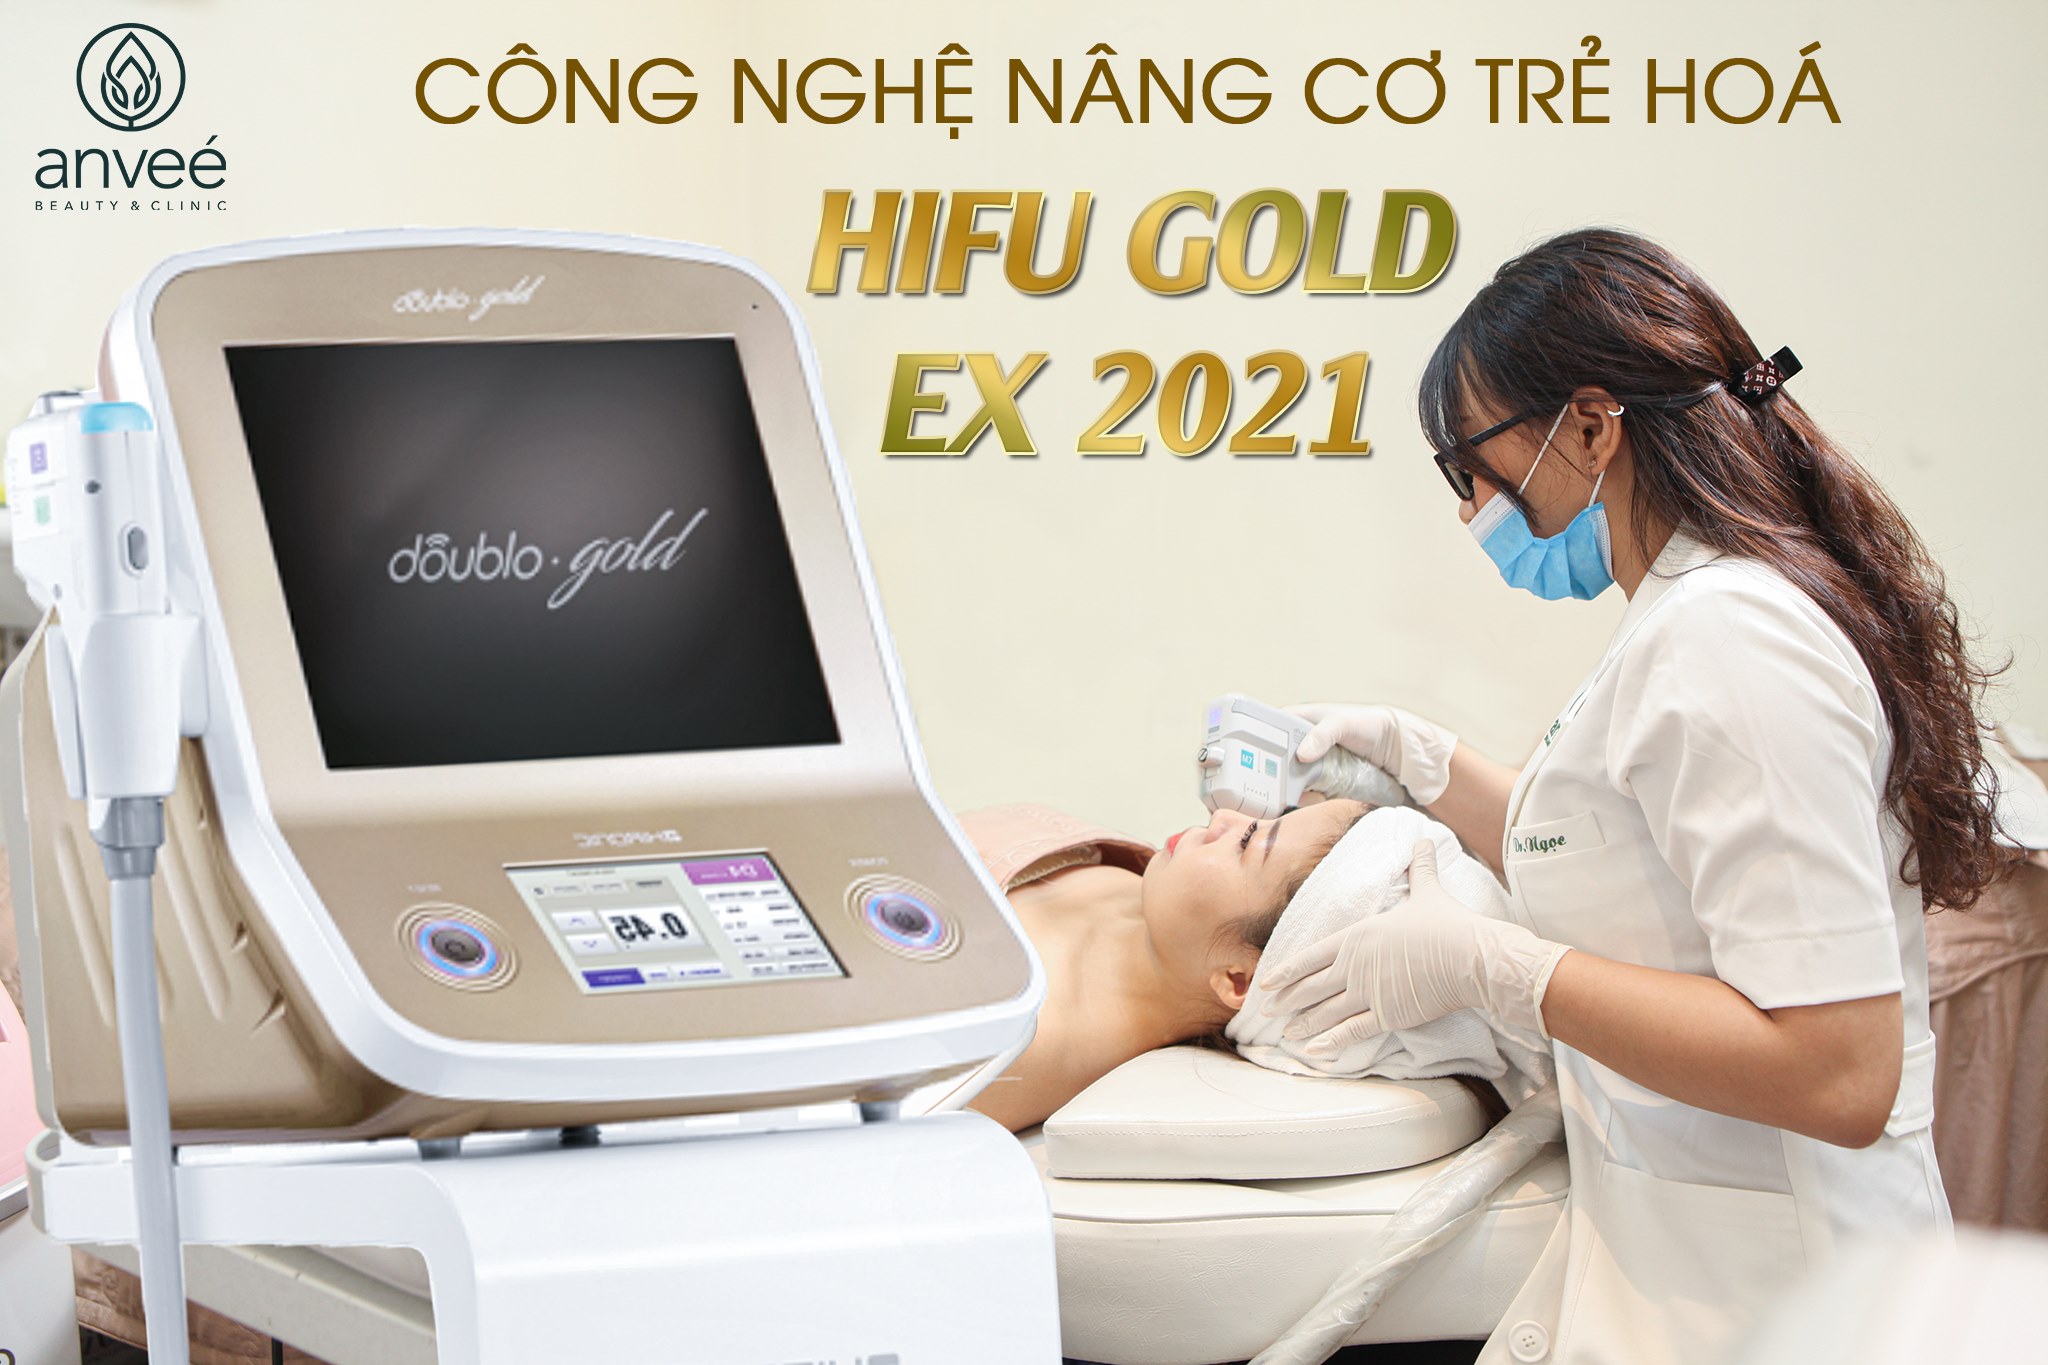 Hàng ngàn chị em đã được “hồi xuân" nhờ công nghệ HIFU GOLD EX 2021